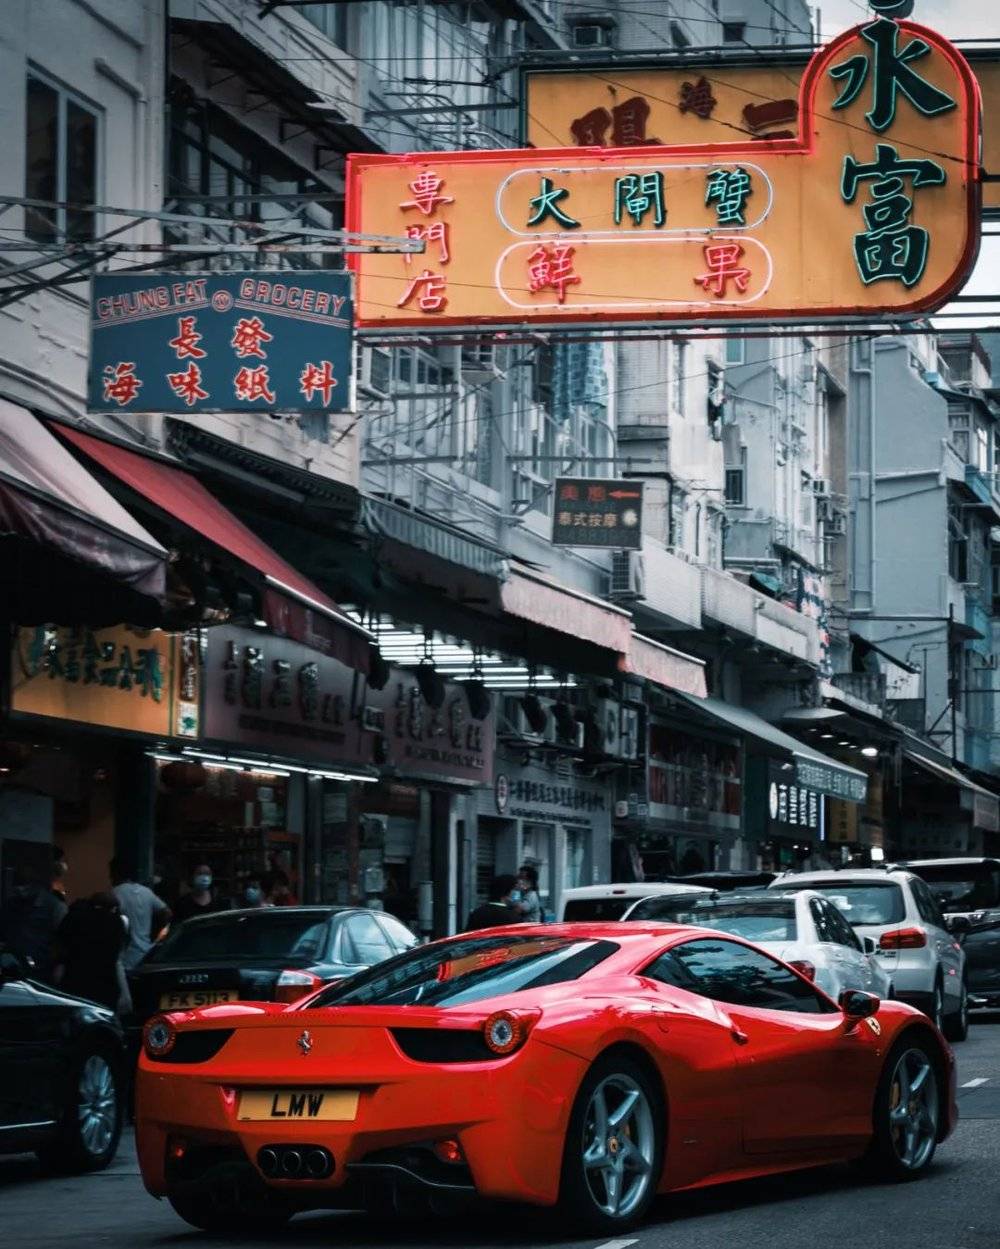 香港街景最矛盾的地方，豪车和老店铺形成的对比。/unsplash<br>